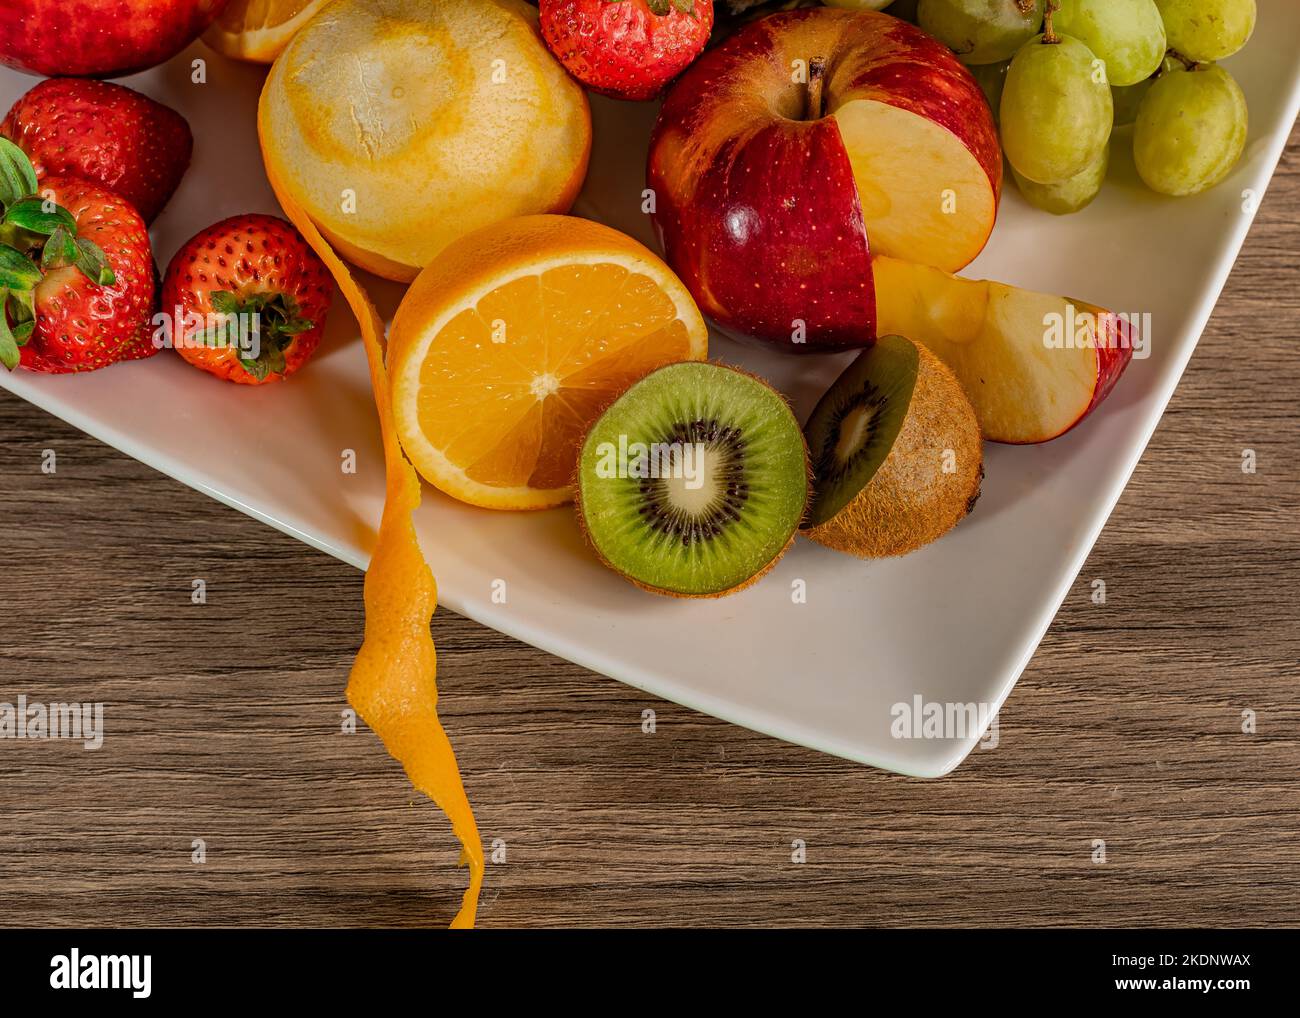 Stillleben von bunten tropischen Früchten auf einem quadratischen Teller auf einer hölzernen Oberfläche. Stockfoto